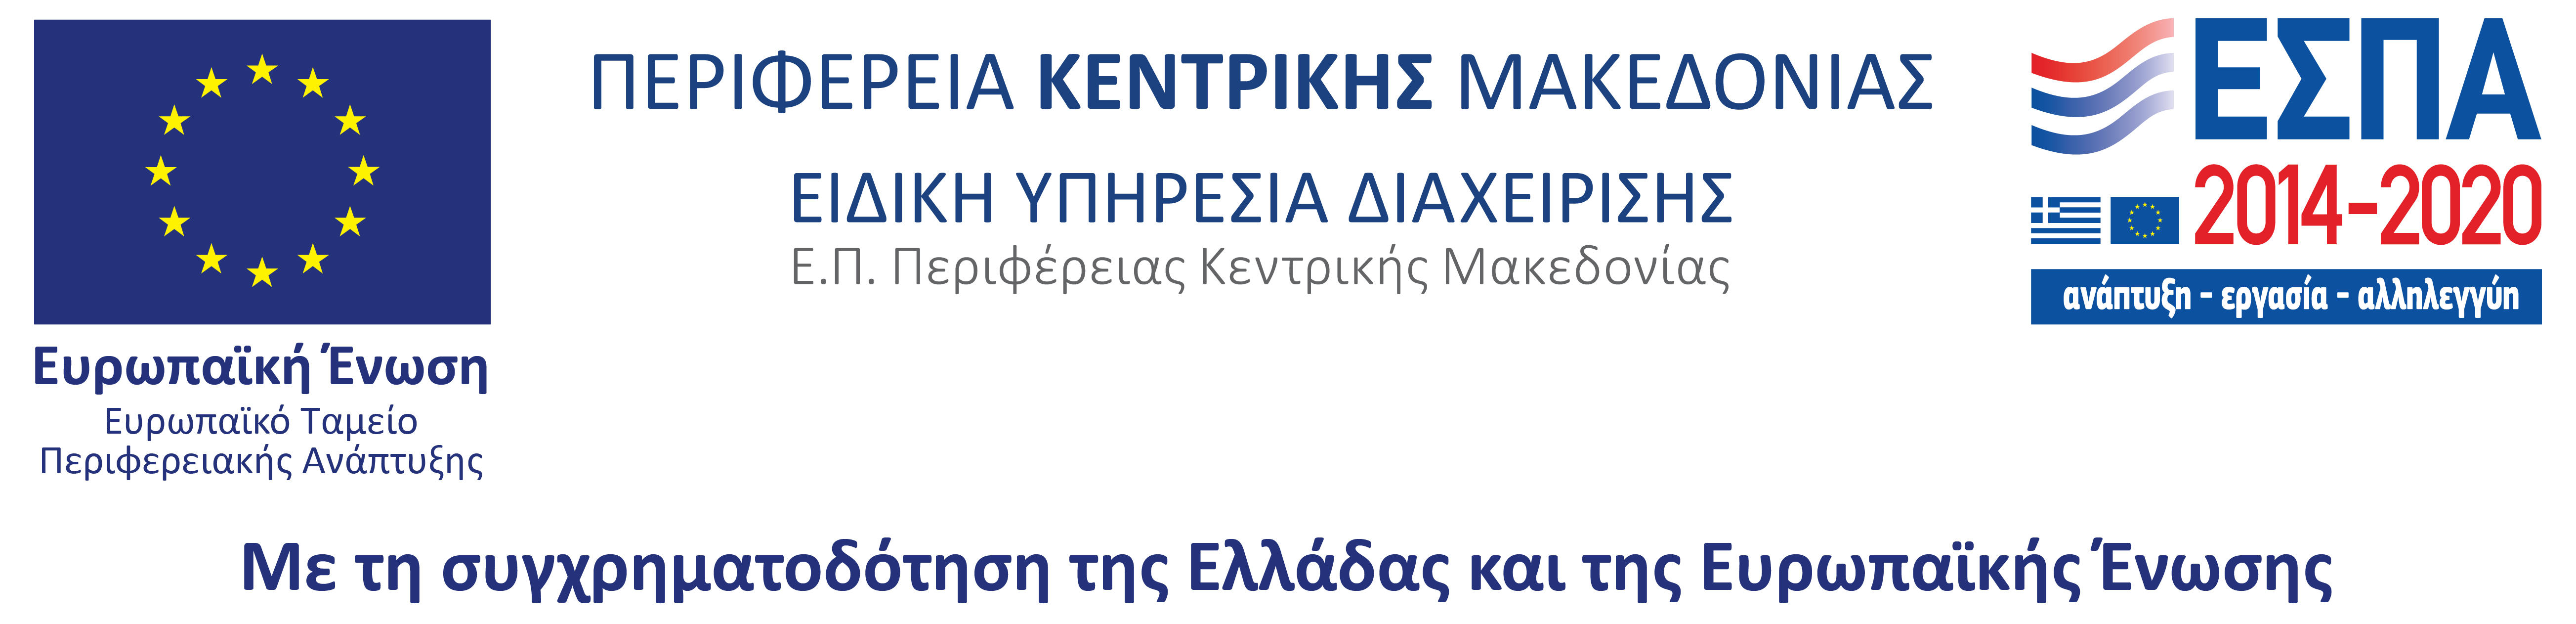 Η 15η ΔΕΒΘ συγχρηματοδοτείται από το Ευρωπαϊκό Ταμείο Περιφερειακής Ανάπτυξης, στο πλαίσιο του ΠΕΠ Κεντρικής Μακεδονίας 2014-2020.